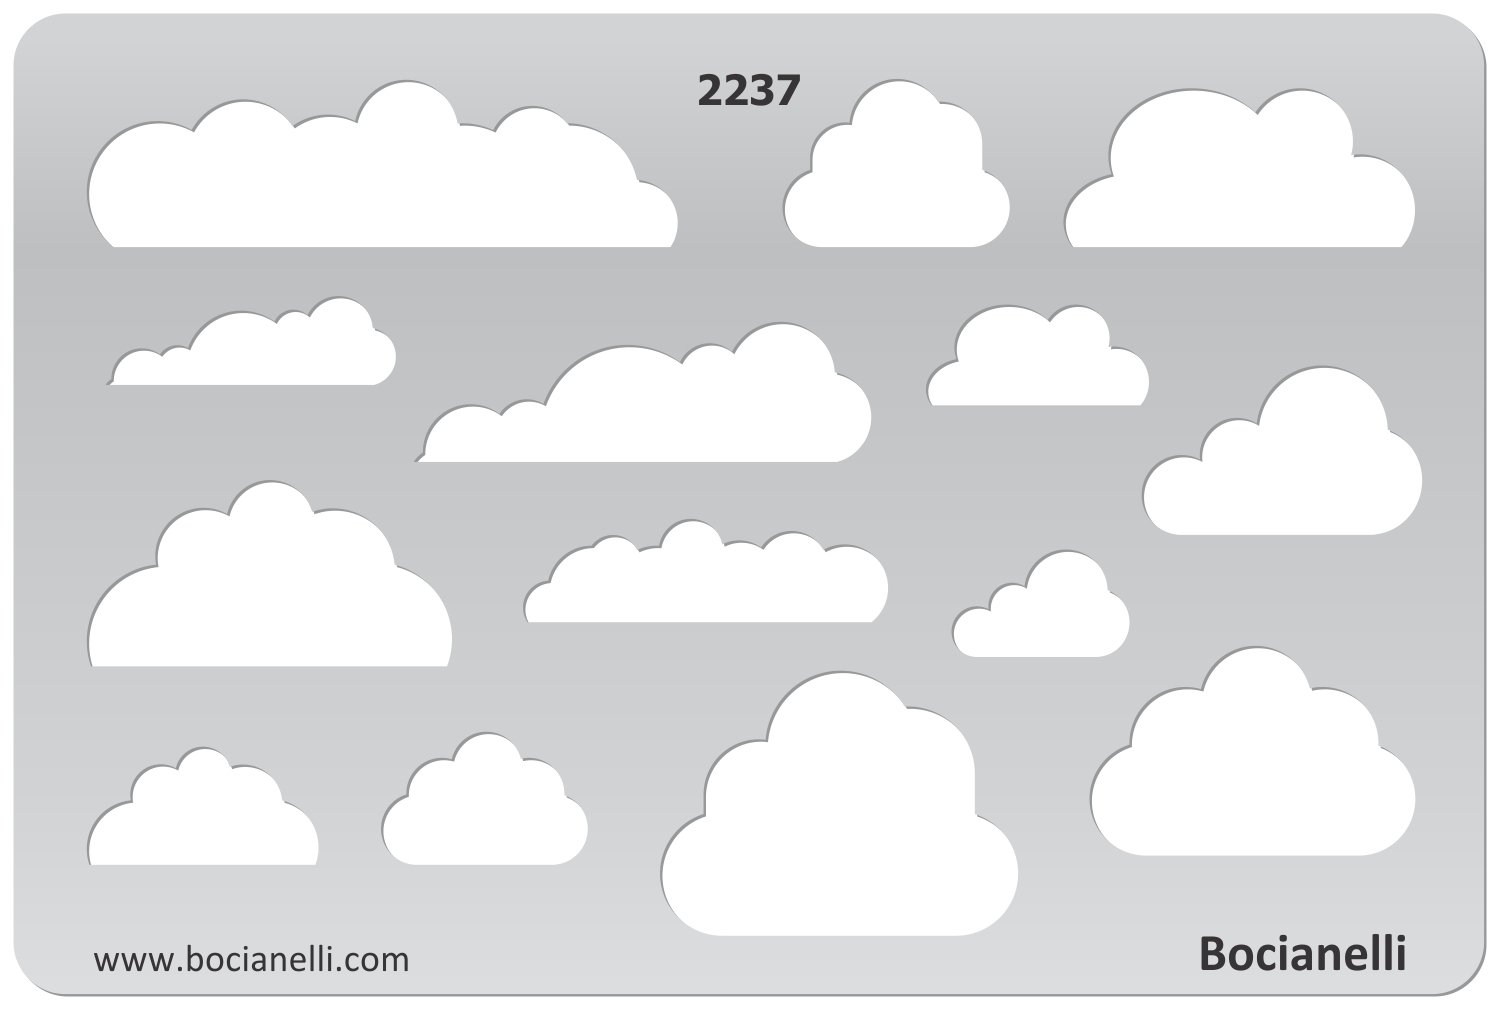 15cm x 10cm Zeichenschablone aus Transparentem Kunststoff für Grafik Design Kunst Handwerk Technisches Zeichnen Schmuckherstellung Schmuck Machen - Wolke Wolken Himmel Symbole